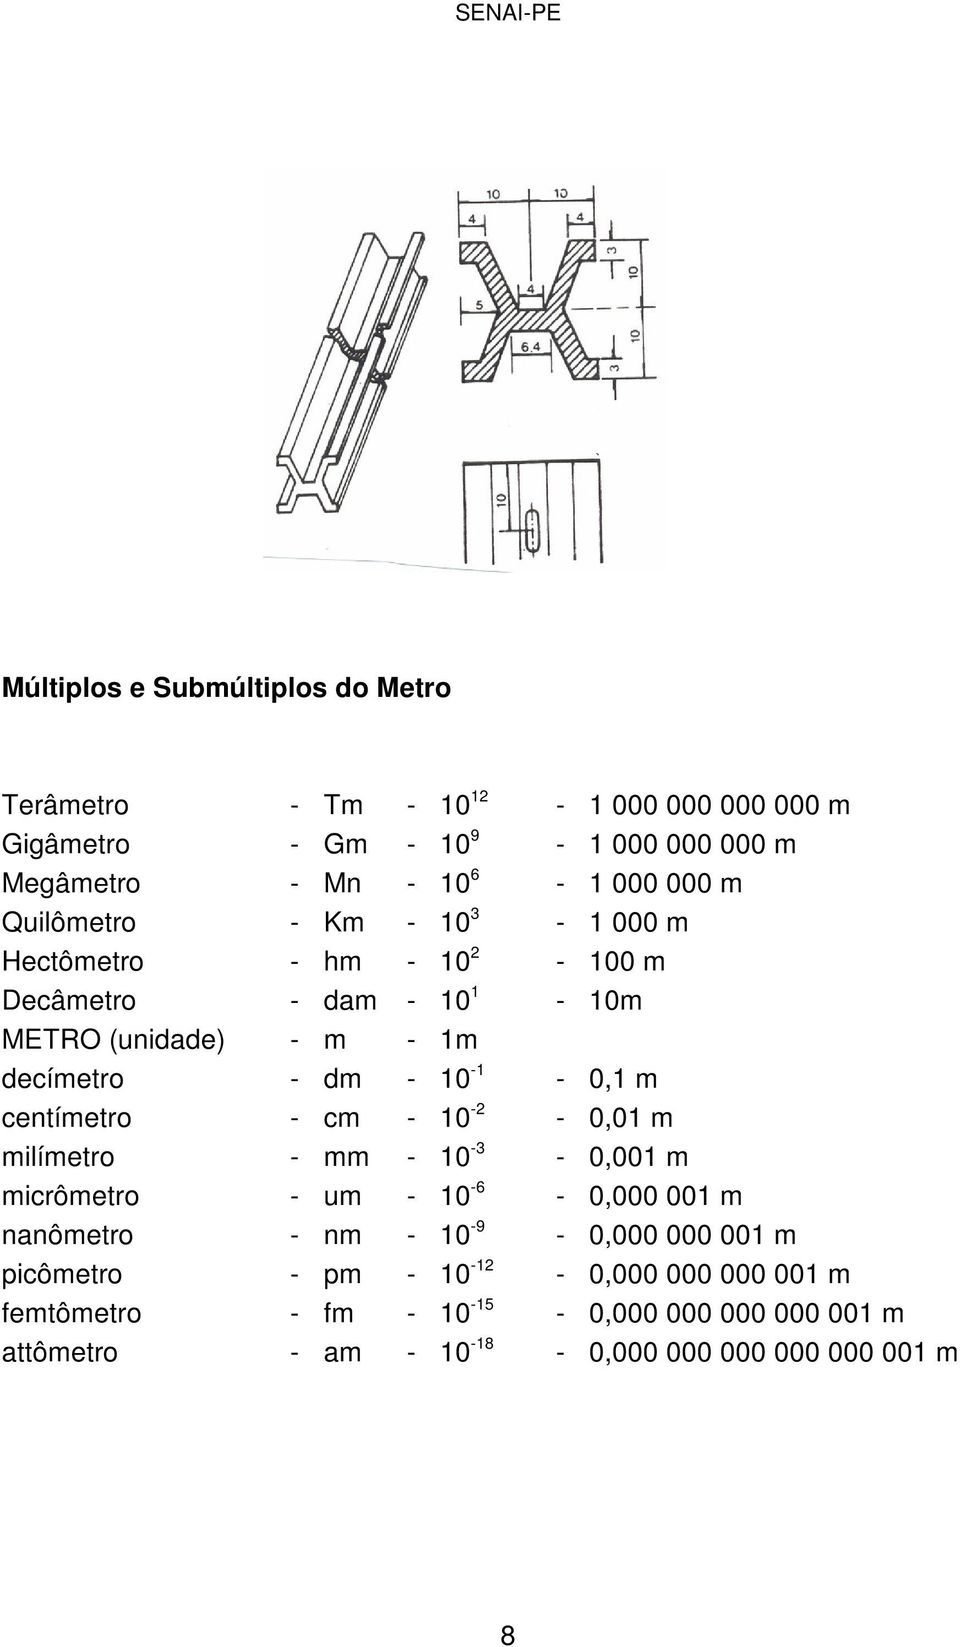 m centímetro - cm - 10-2 - 0,01 m milímetro - mm - 10-3 - 0,001 m micrômetro - um - 10-6 - 0,000 001 m nanômetro - nm - 10-9 - 0,000 000 001 m